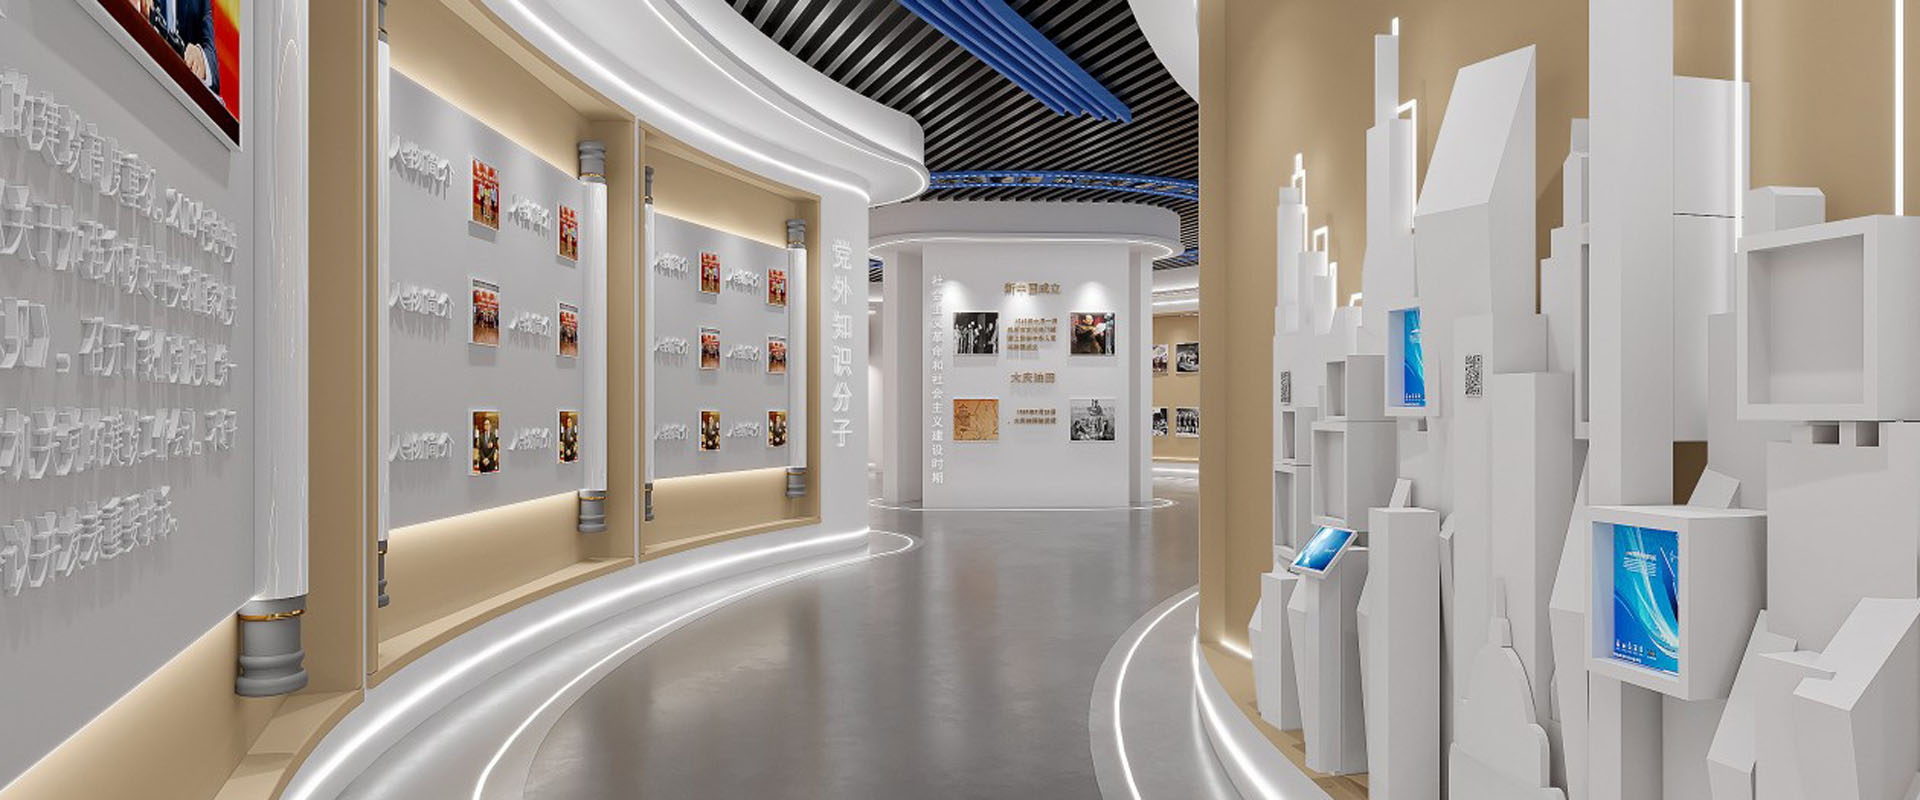 让你轻松了解如何打造一个出色的展馆展厅设计